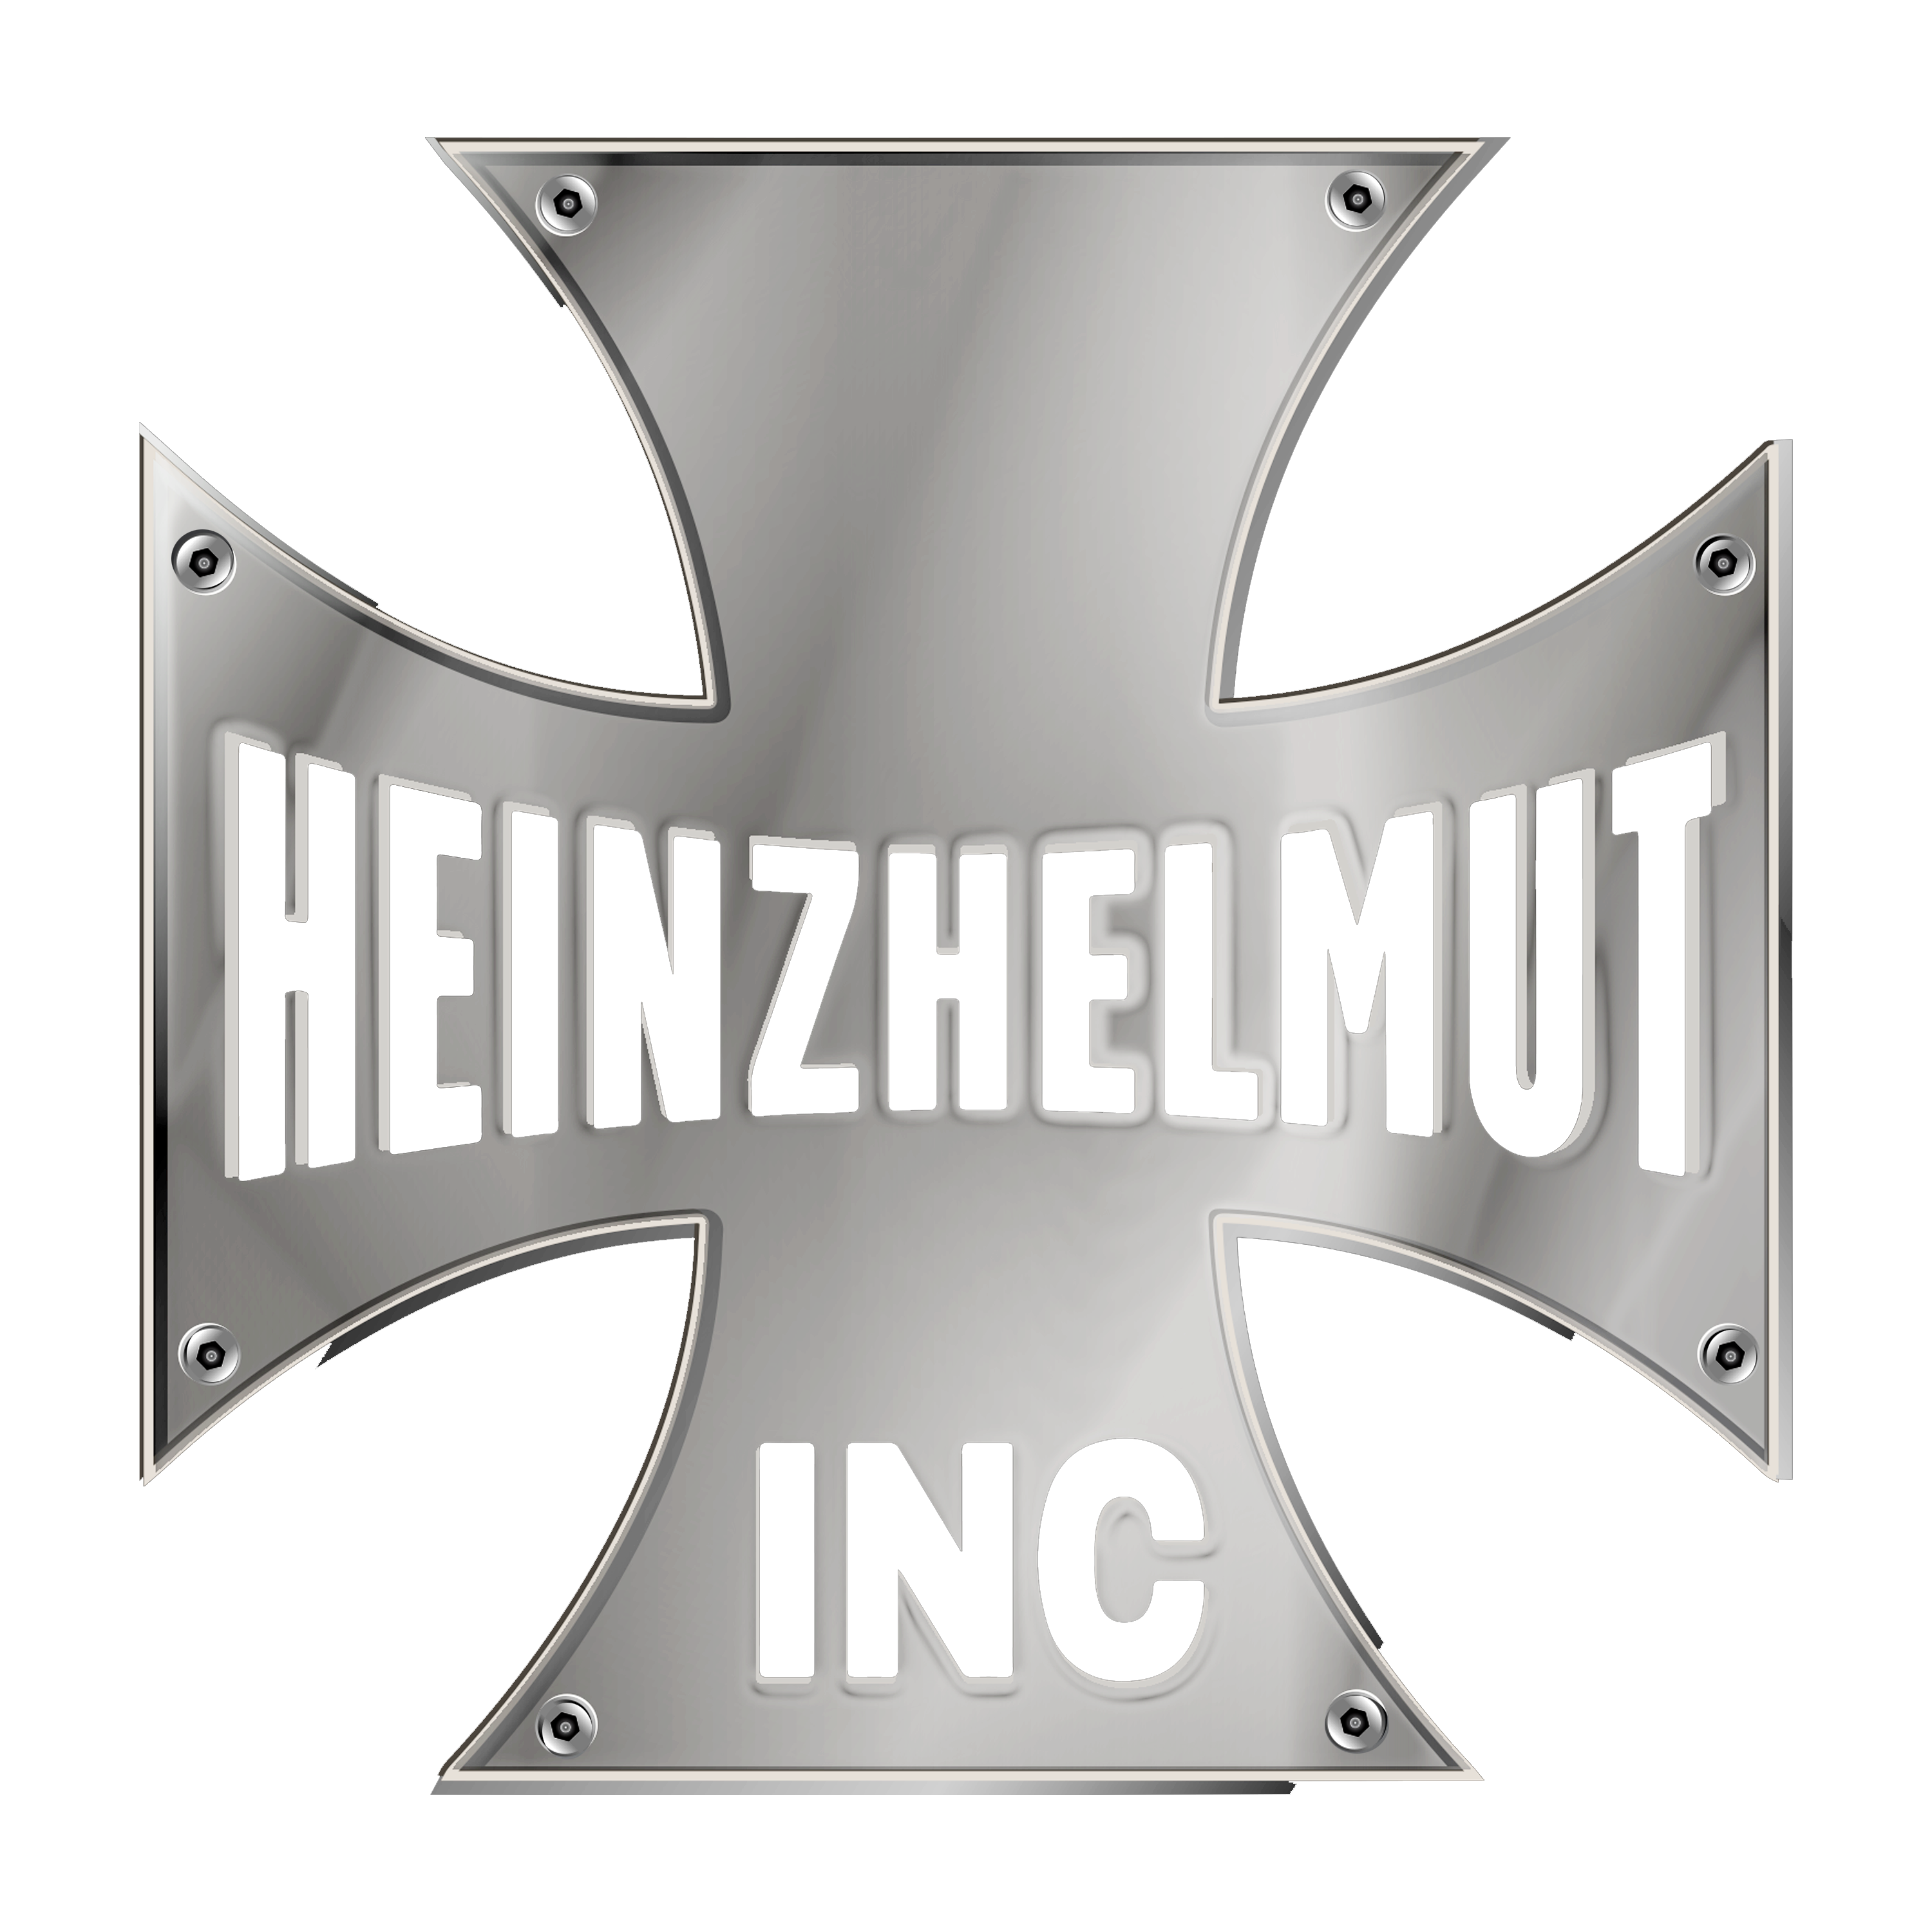 HeinzHelmut